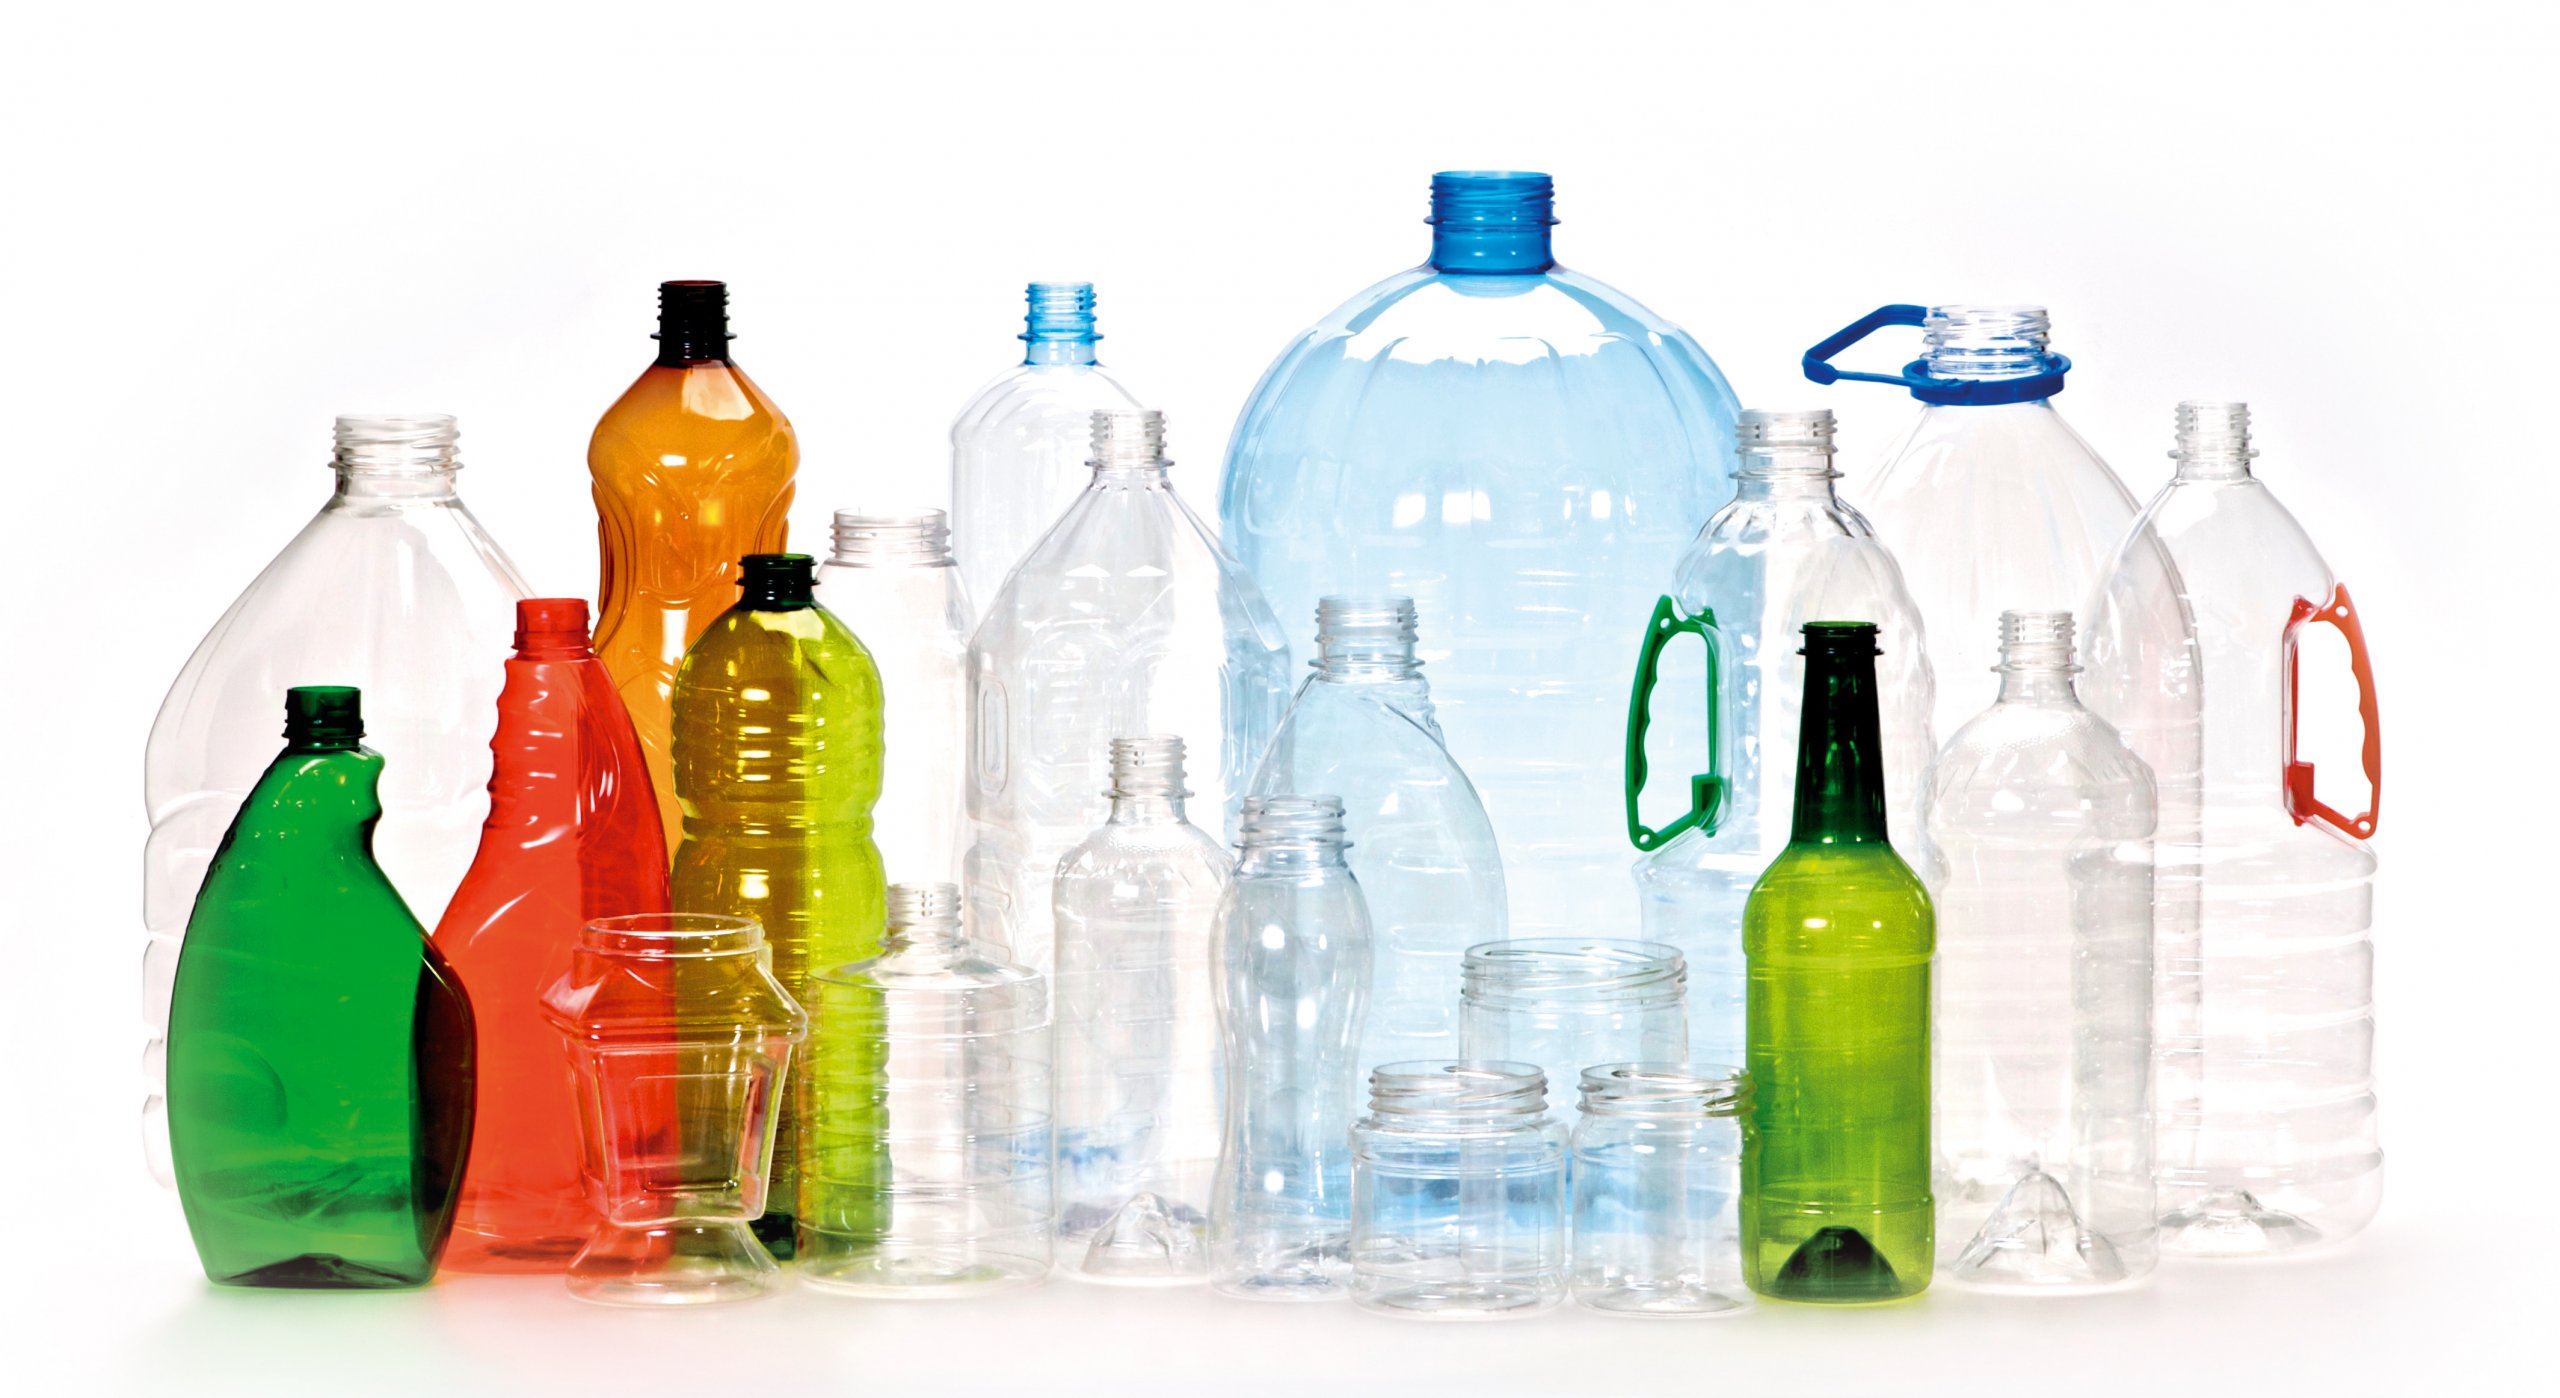 احذر من إعادة إستخدام عبوات المياه البلاستيك .. تشكل خطر على حياتك